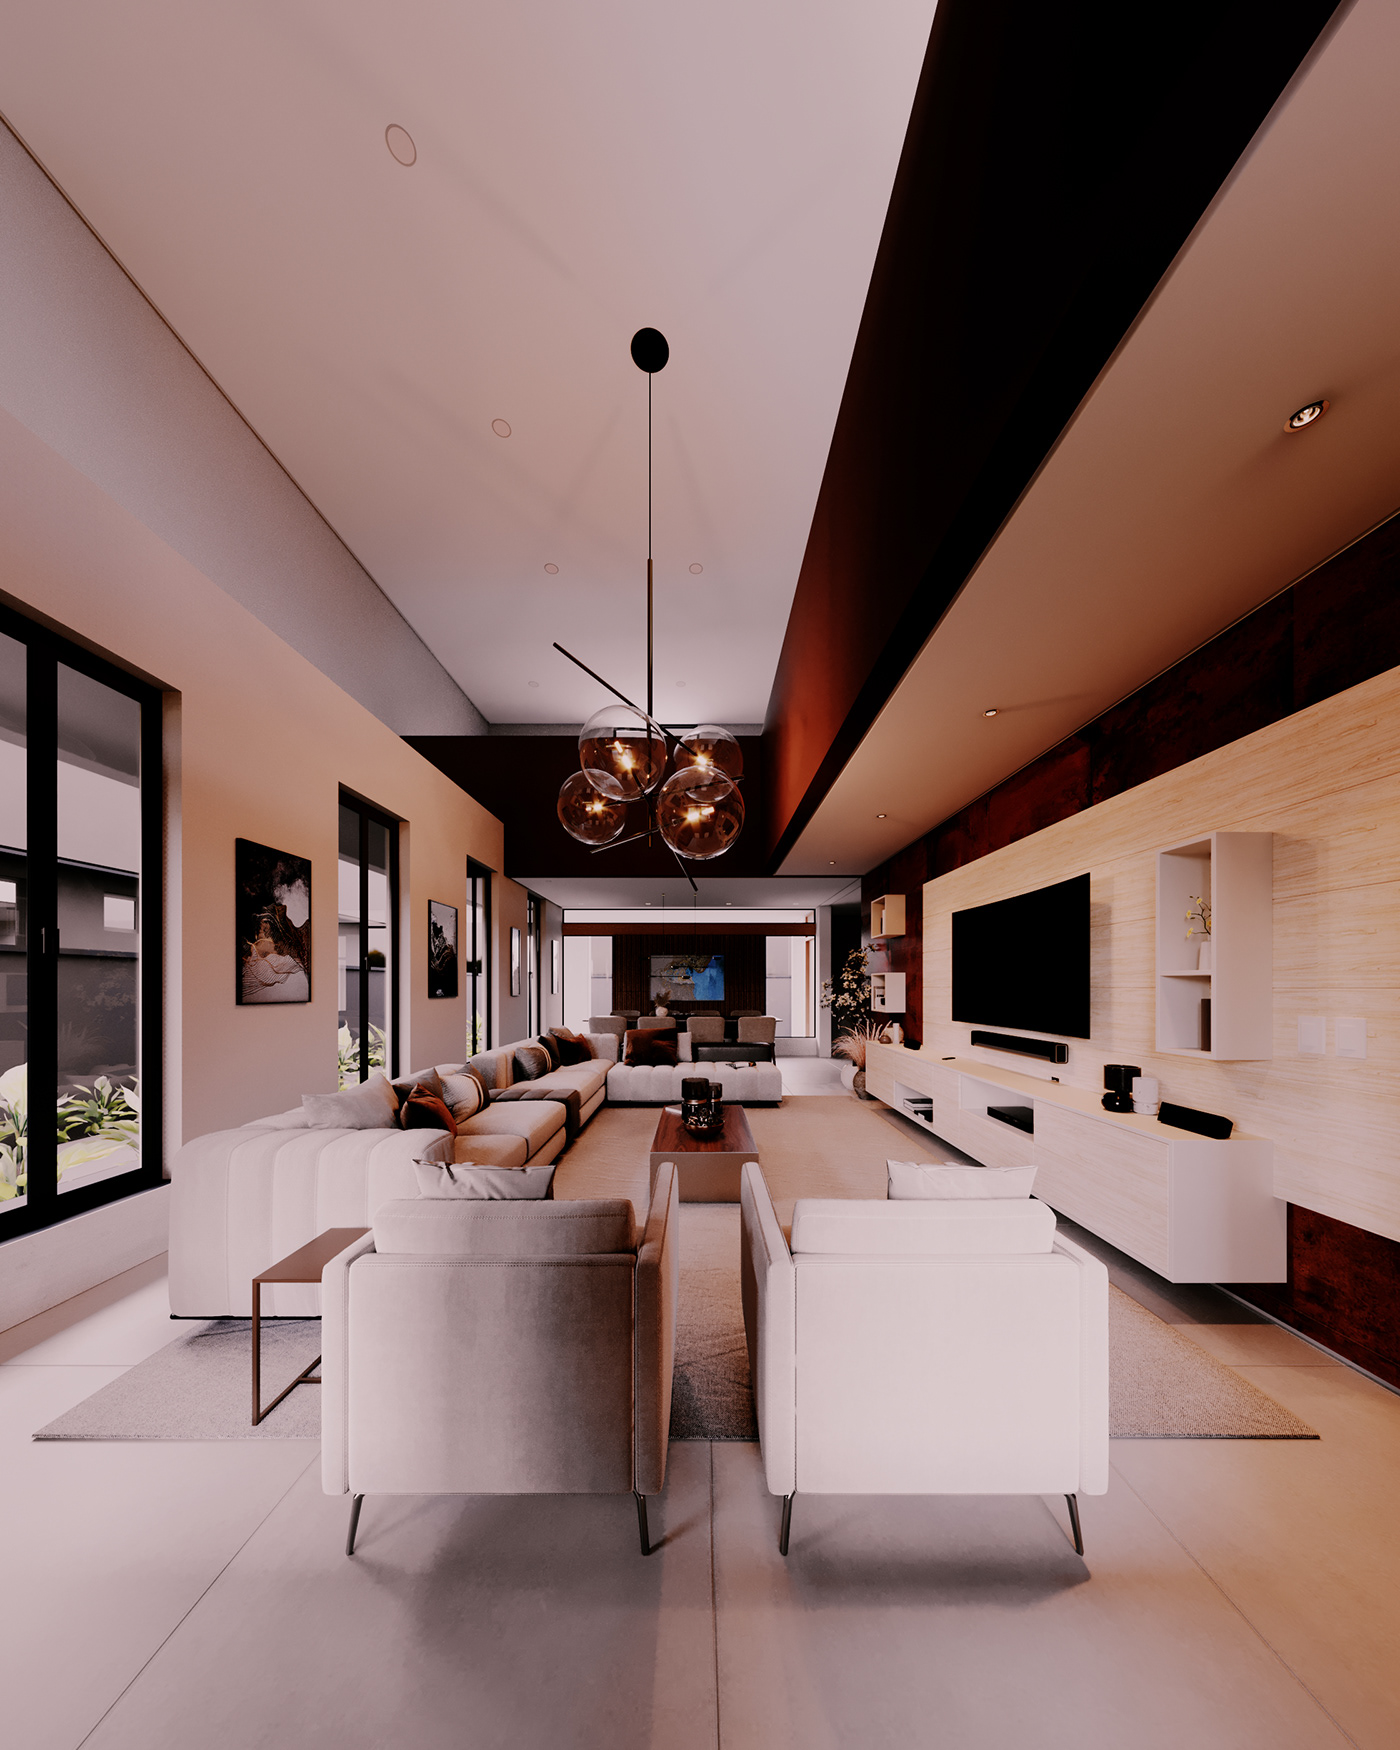 house archviz 3D interior design  architecture Render 3ds max CGI modern visualization